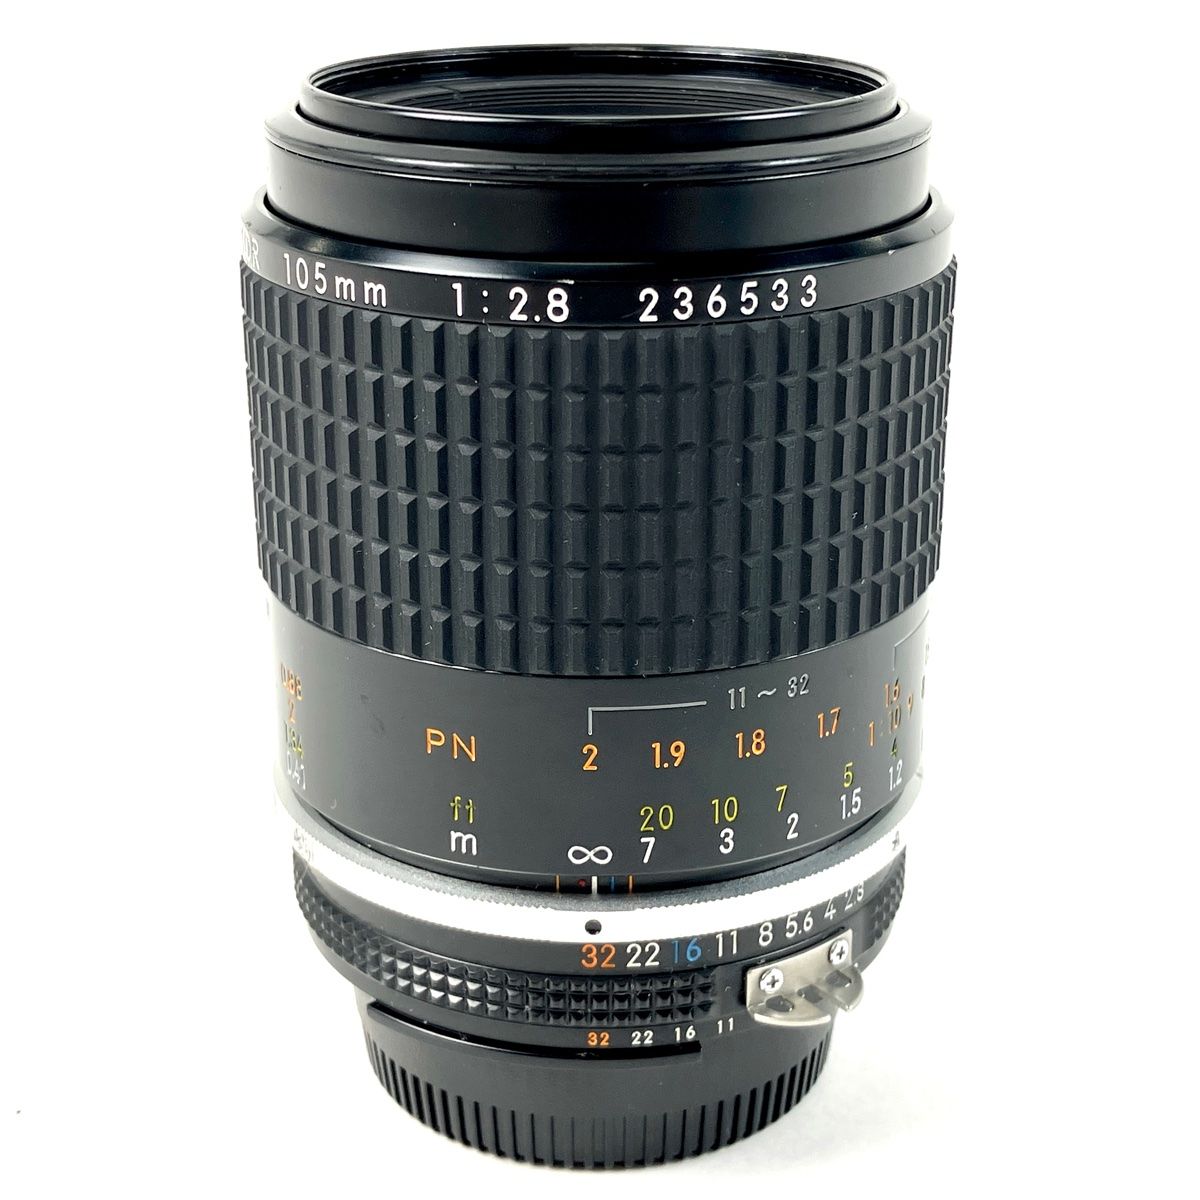 ニコン Nikon 105mm f 2.5 AI マニュアルレンズ - レンズ(単焦点)